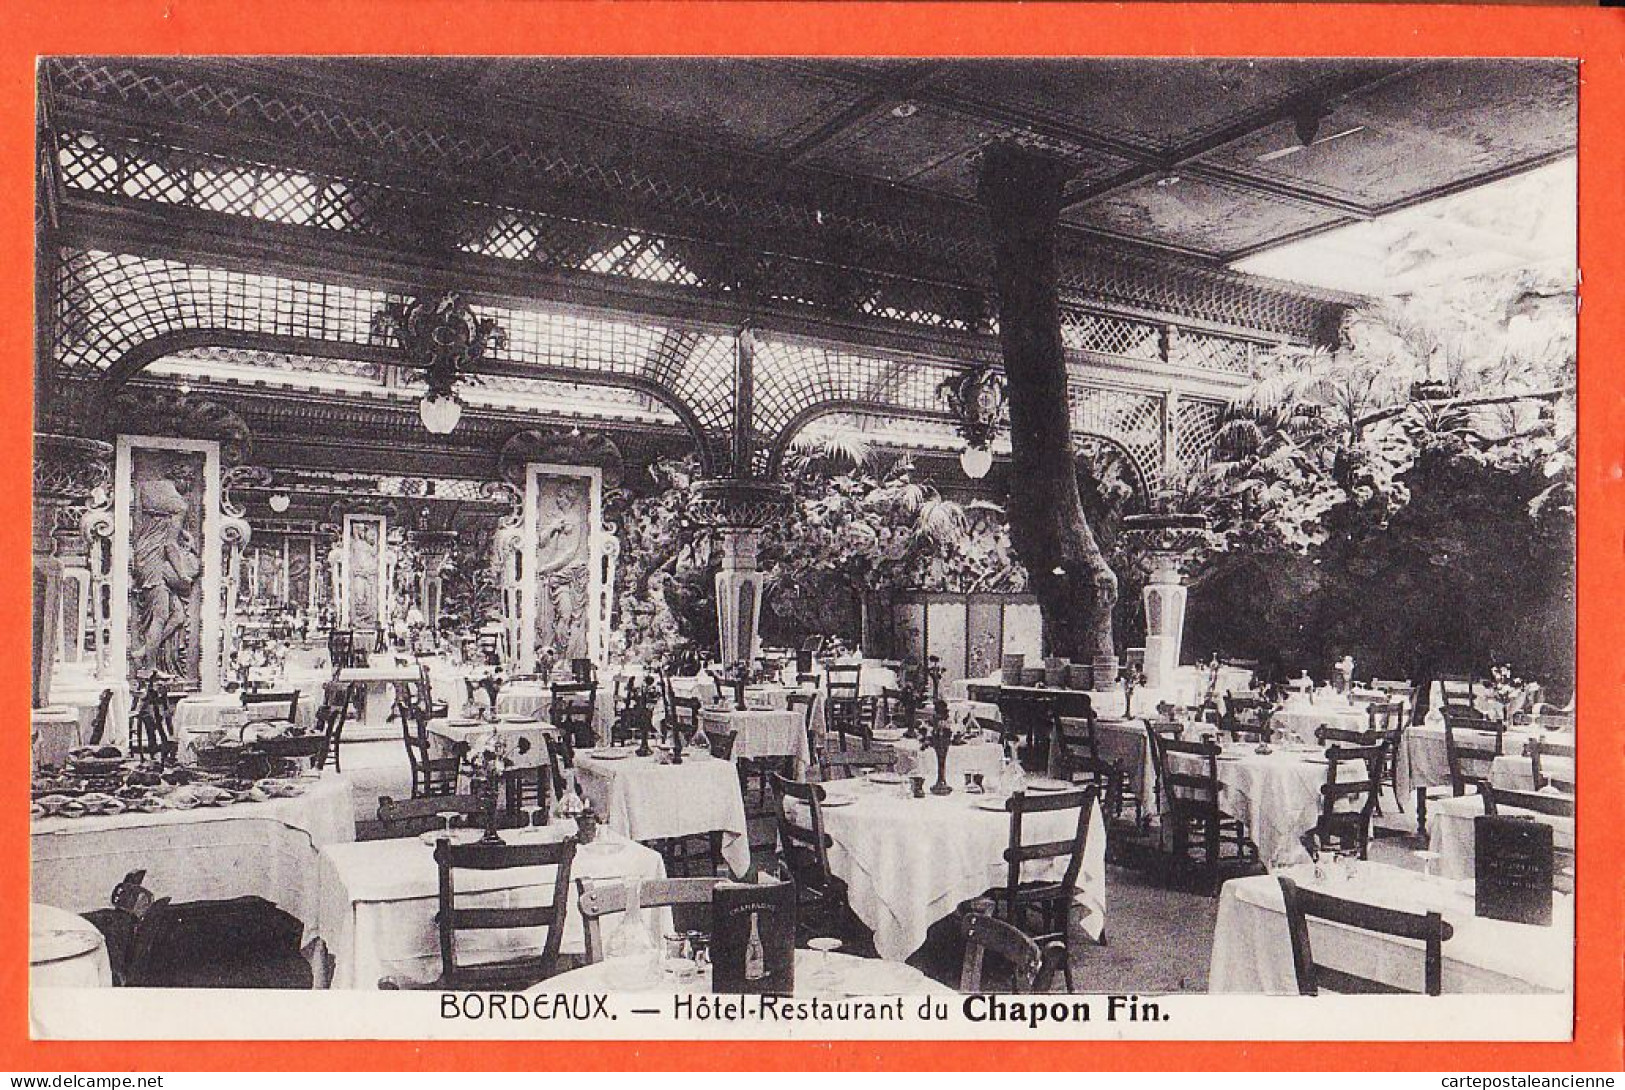 28406 / Tarif Caisse Vin 25 Ou 50 Bouteilles Assorties Millésime 1899 à 1904 BORDEAUX (33) Hotel-Restaurant CHAPON FIN - Bordeaux